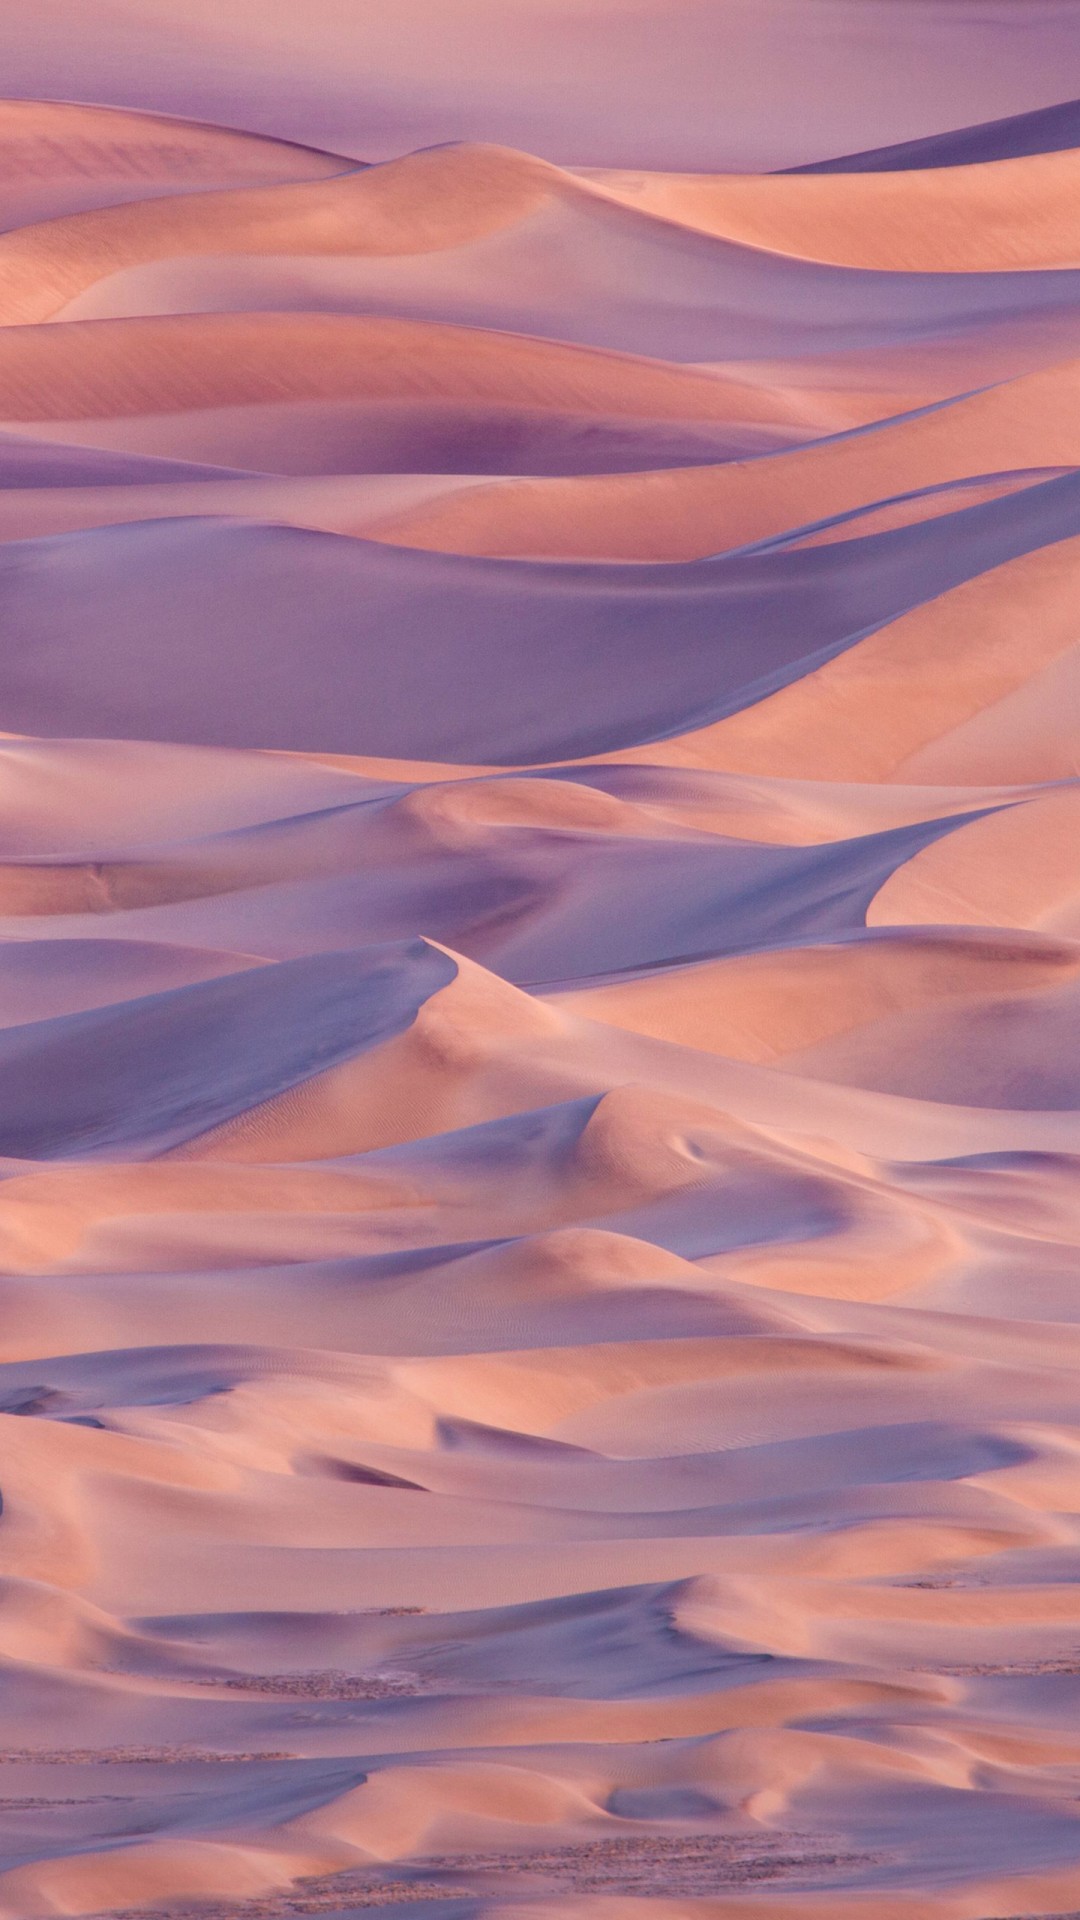 Yosemite, 5k, 4k Wallpaper, Desert, Sand, Osx, Apple, - Mac Os X Desert -  640x1138 Wallpaper 